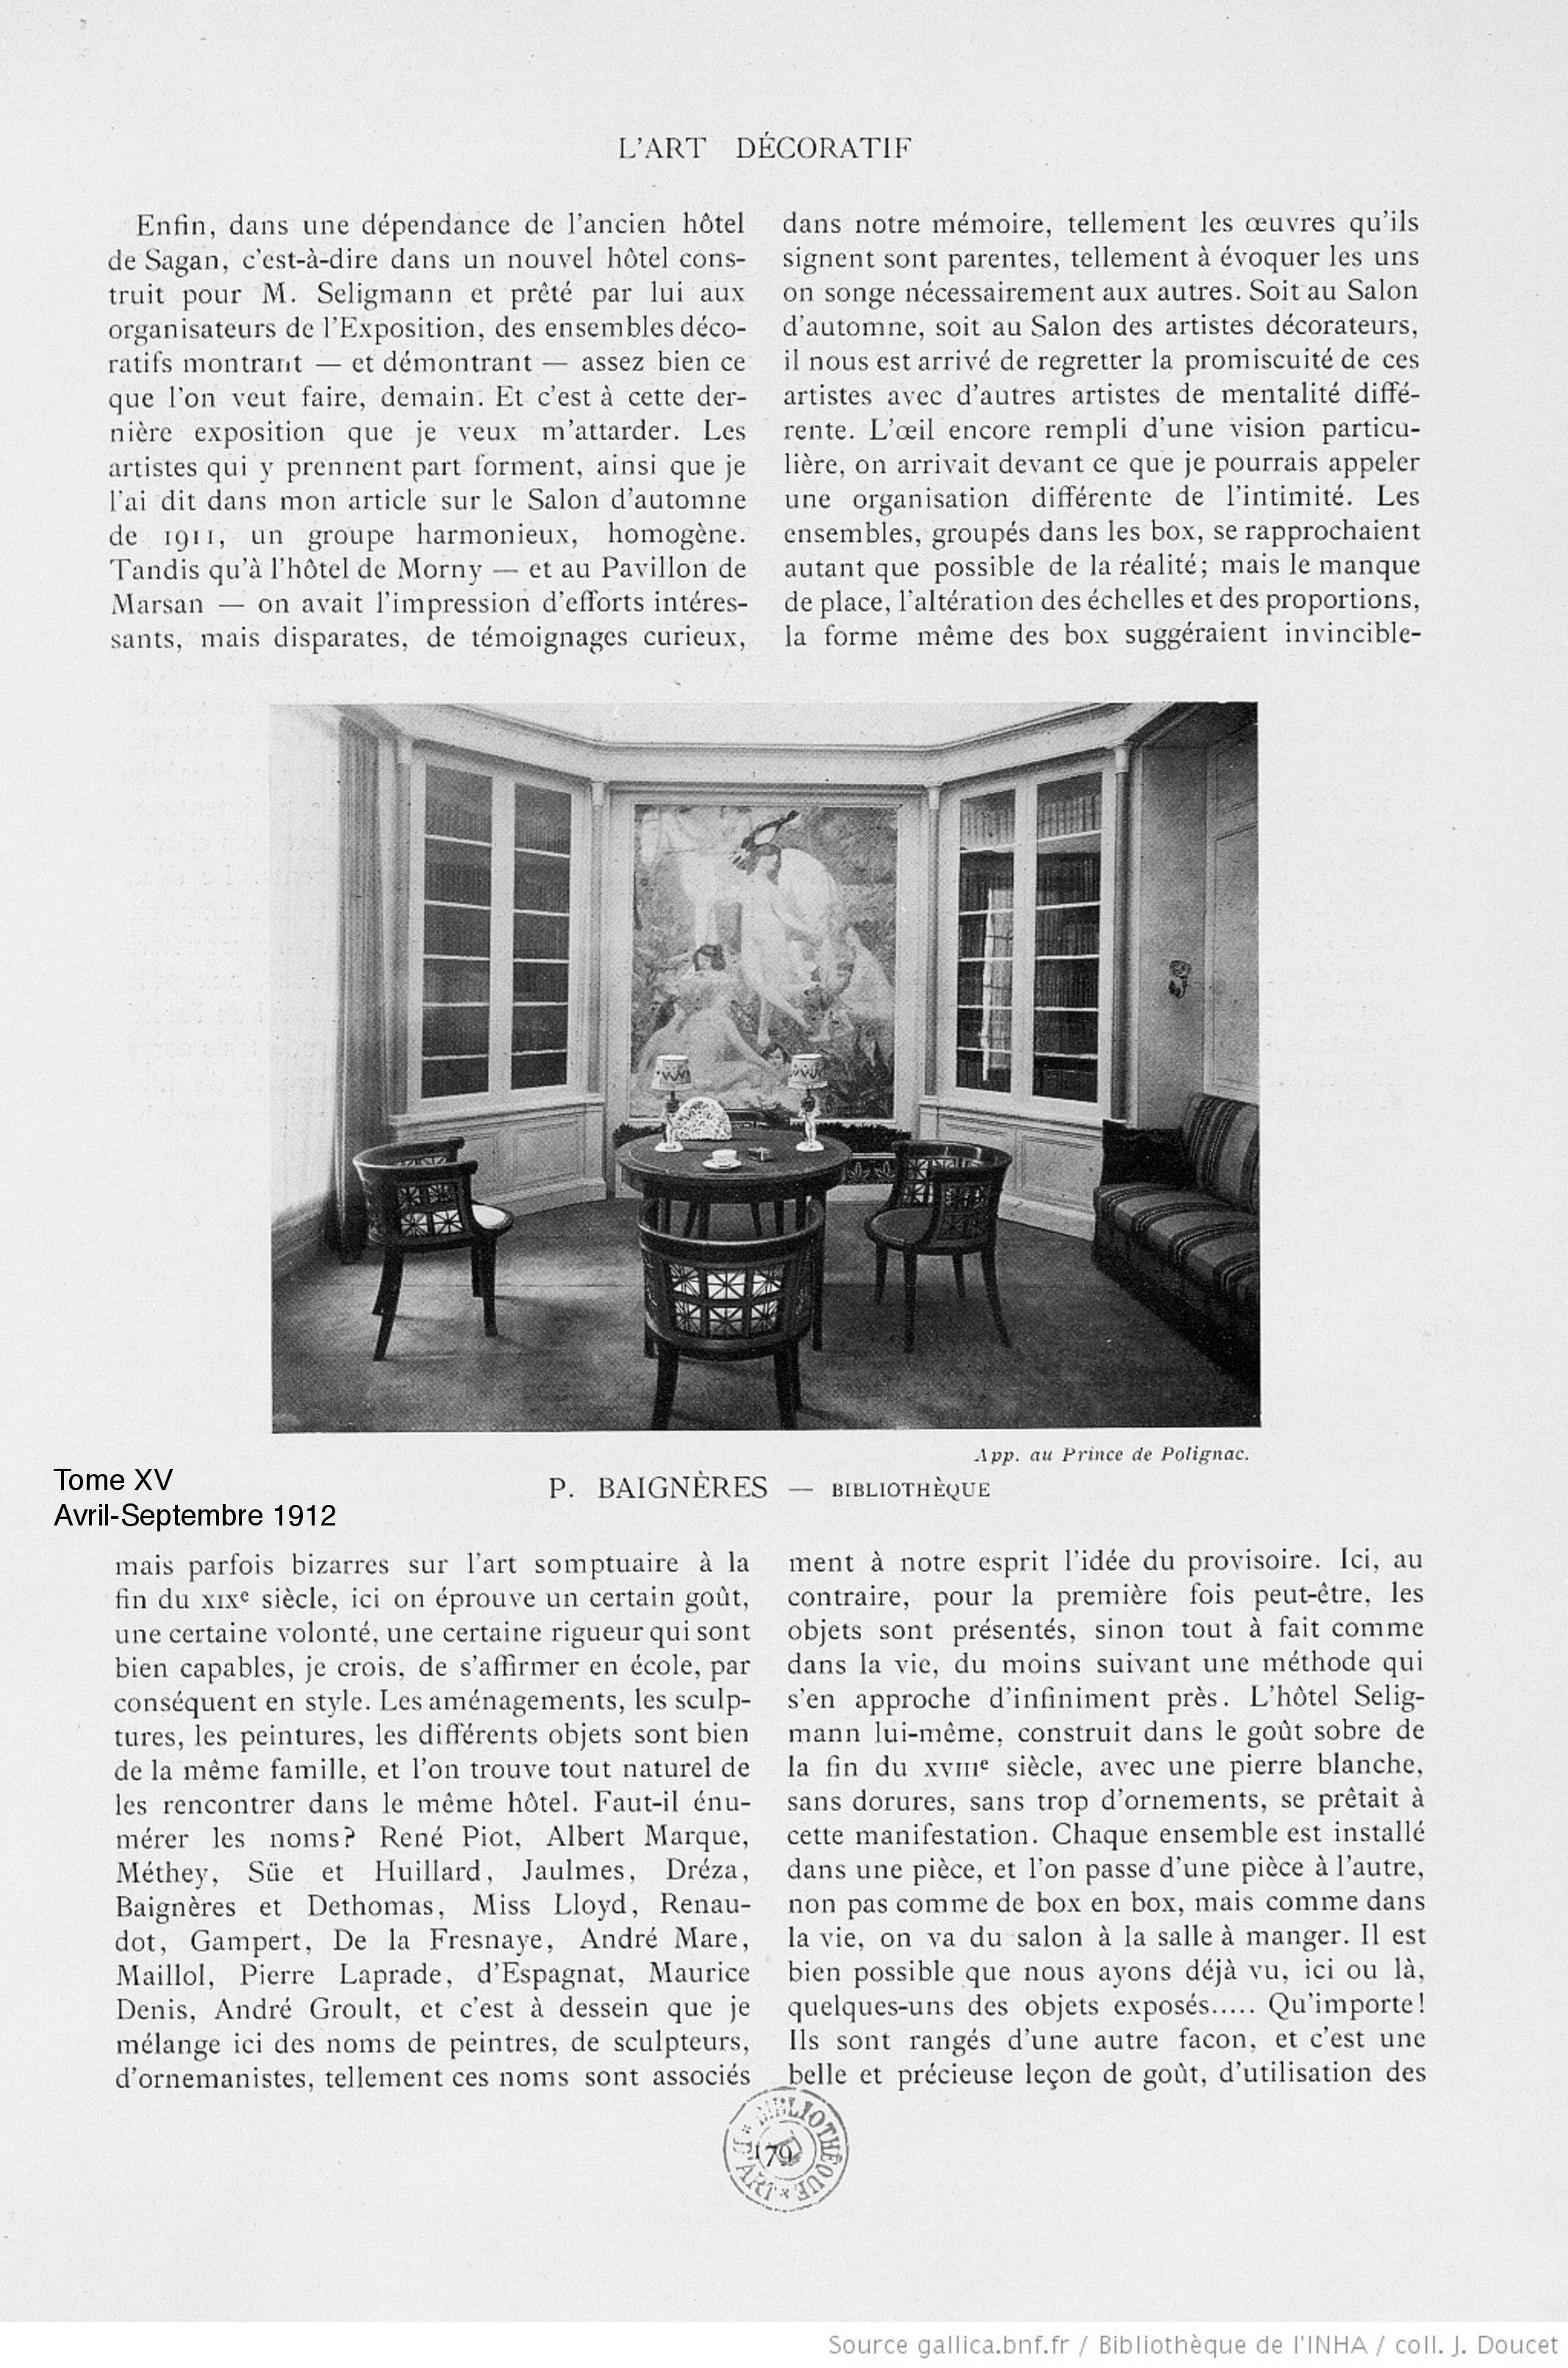 L'Art et les Artistes, avril - septembre 1912 (Copy)